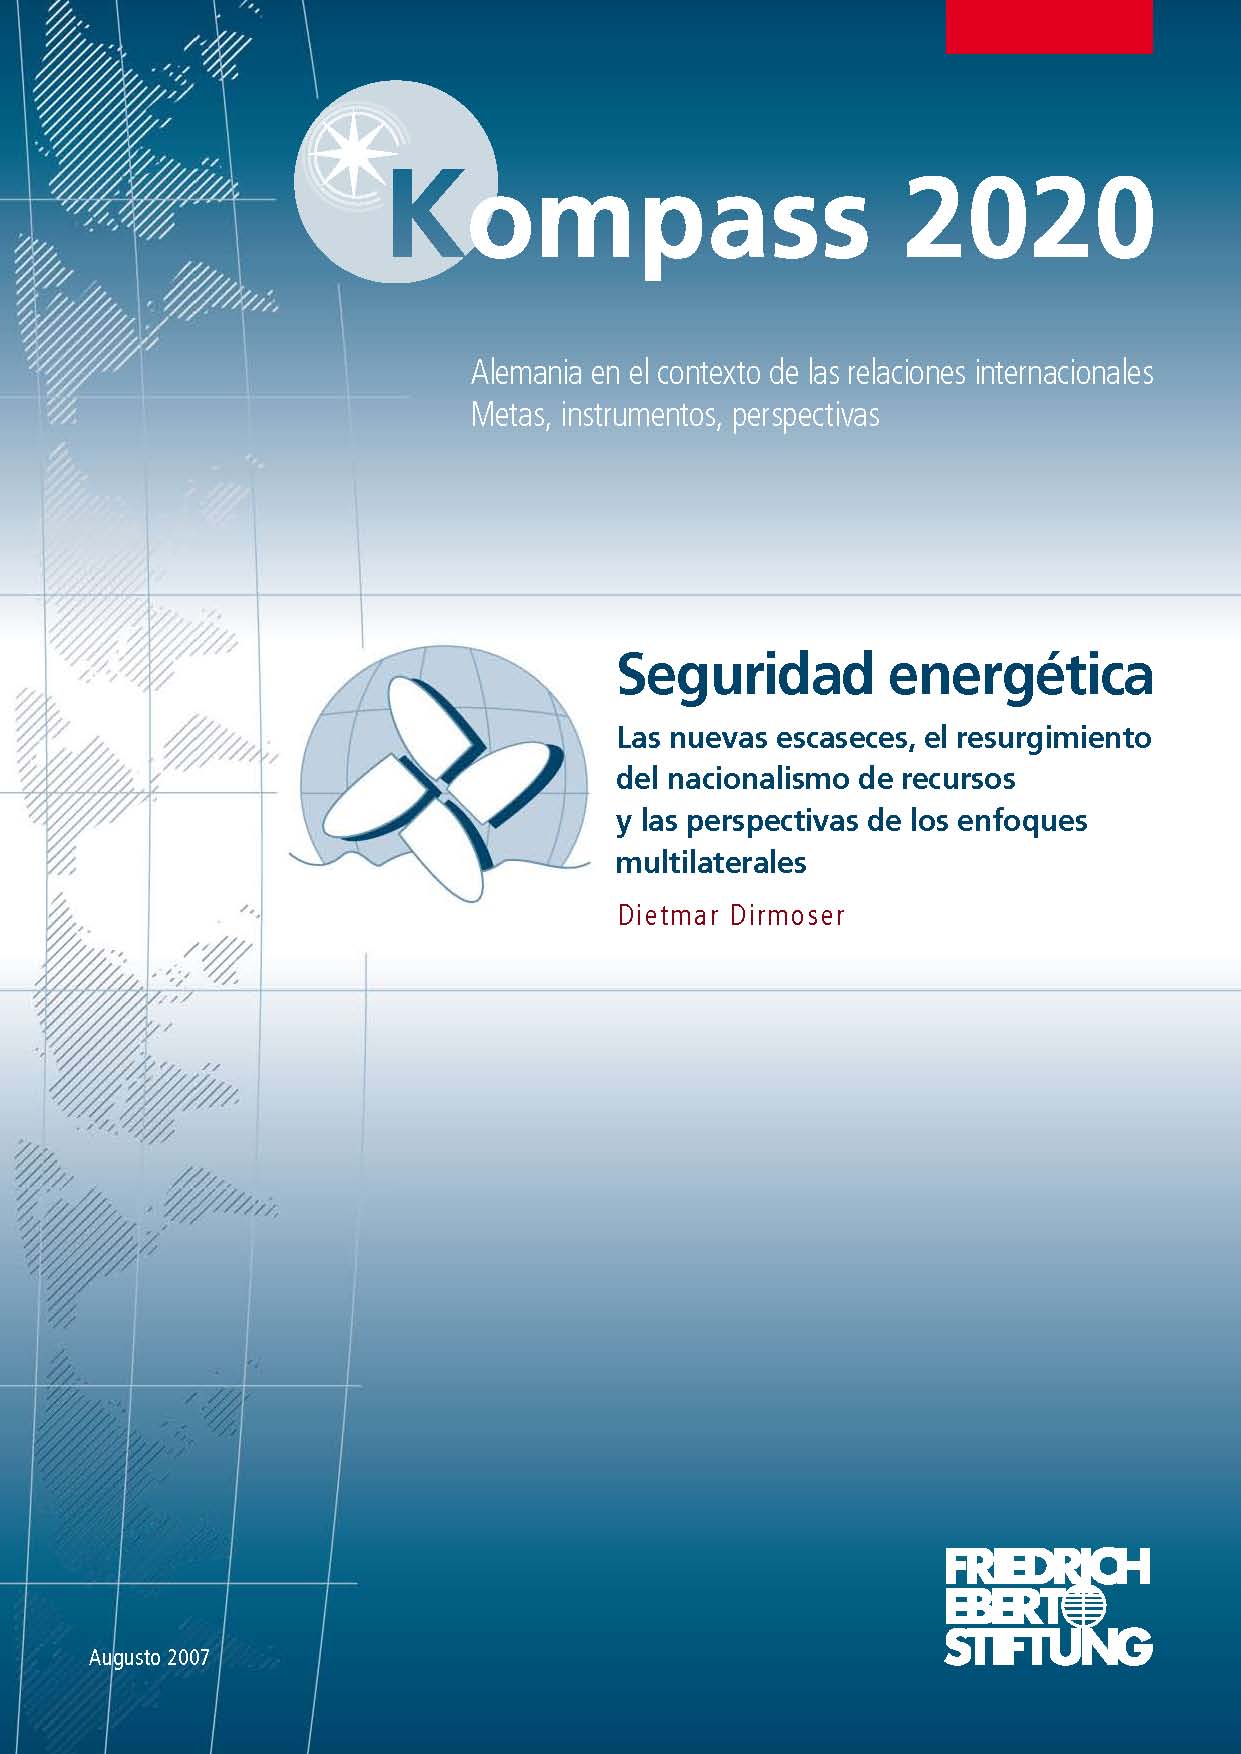 Seguridad energética: las nuevas escaseces, el resurgimiento del nacionalismo de recursos y las perspectivas de los enfoques multilaterales